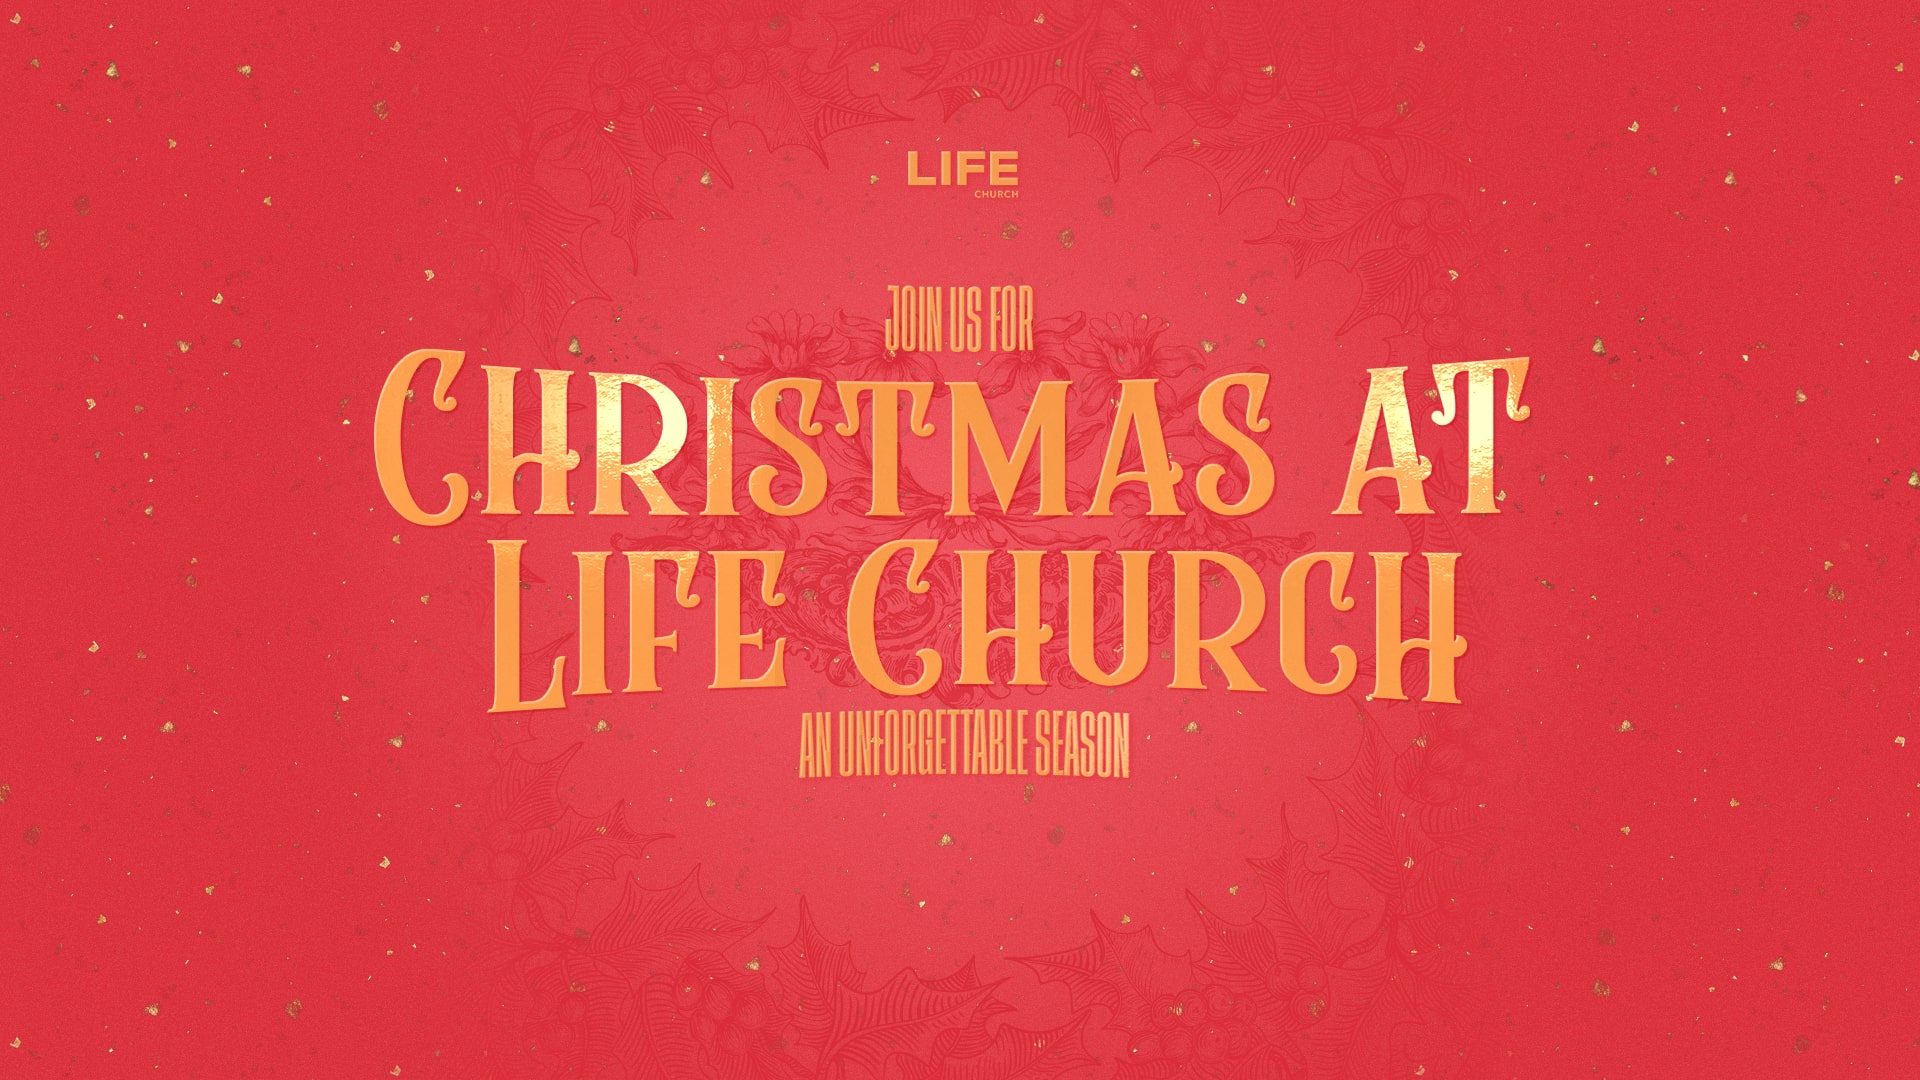 Christmas at LIFE Church